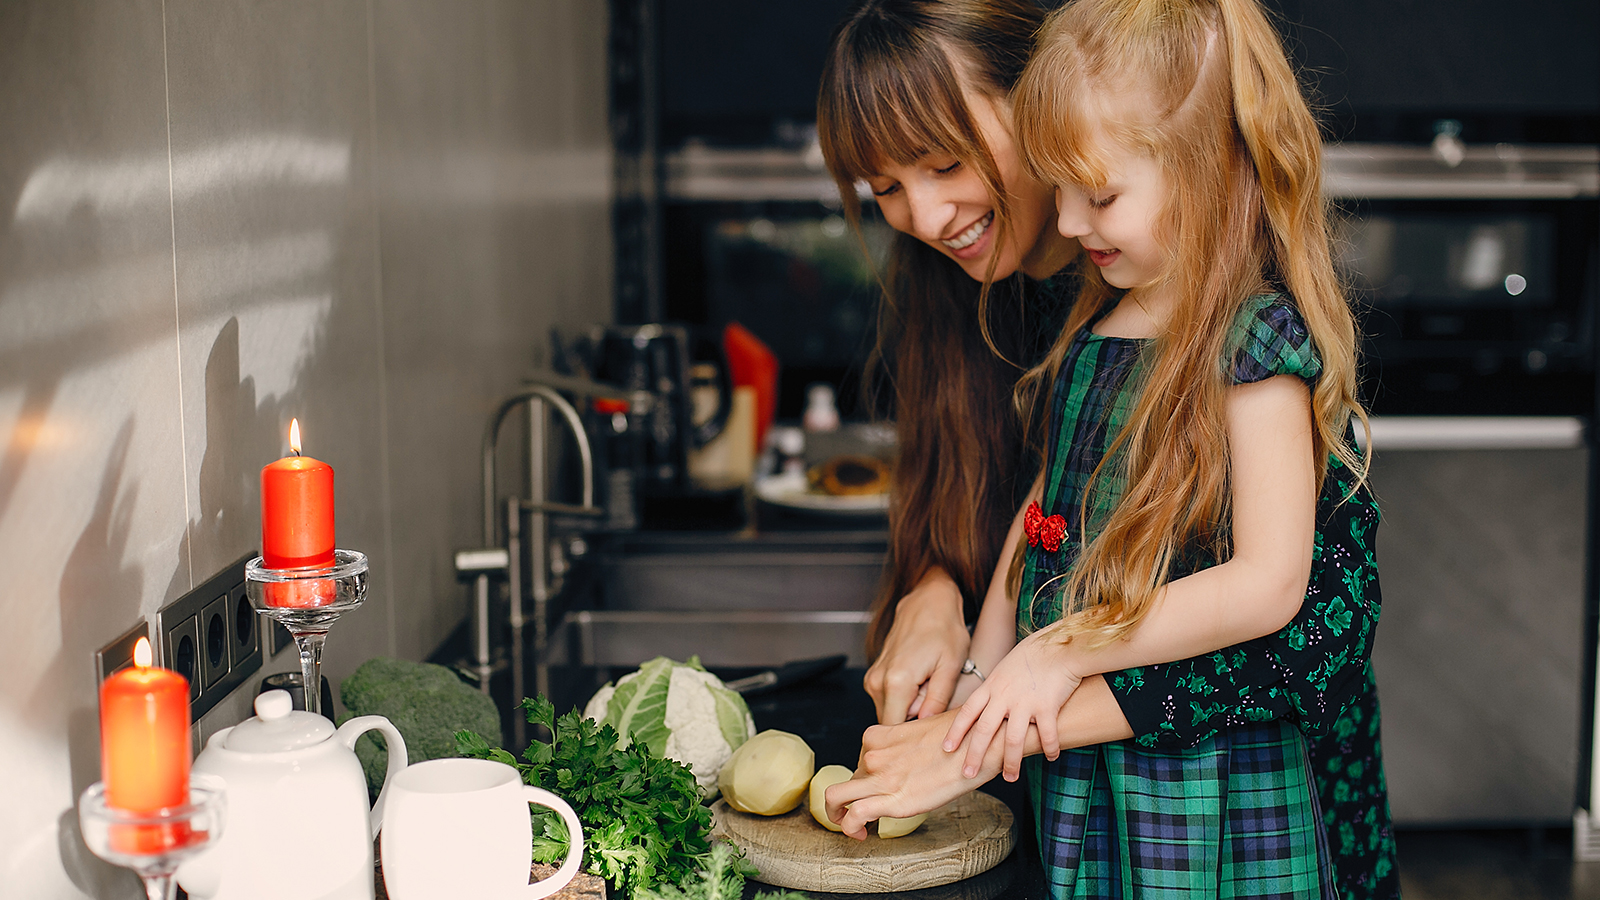 تخصيص بعض المهام للأطفال في المطبخ، يجعلهم أكثر التزاما بالواجبات العائلية (فري بيك)